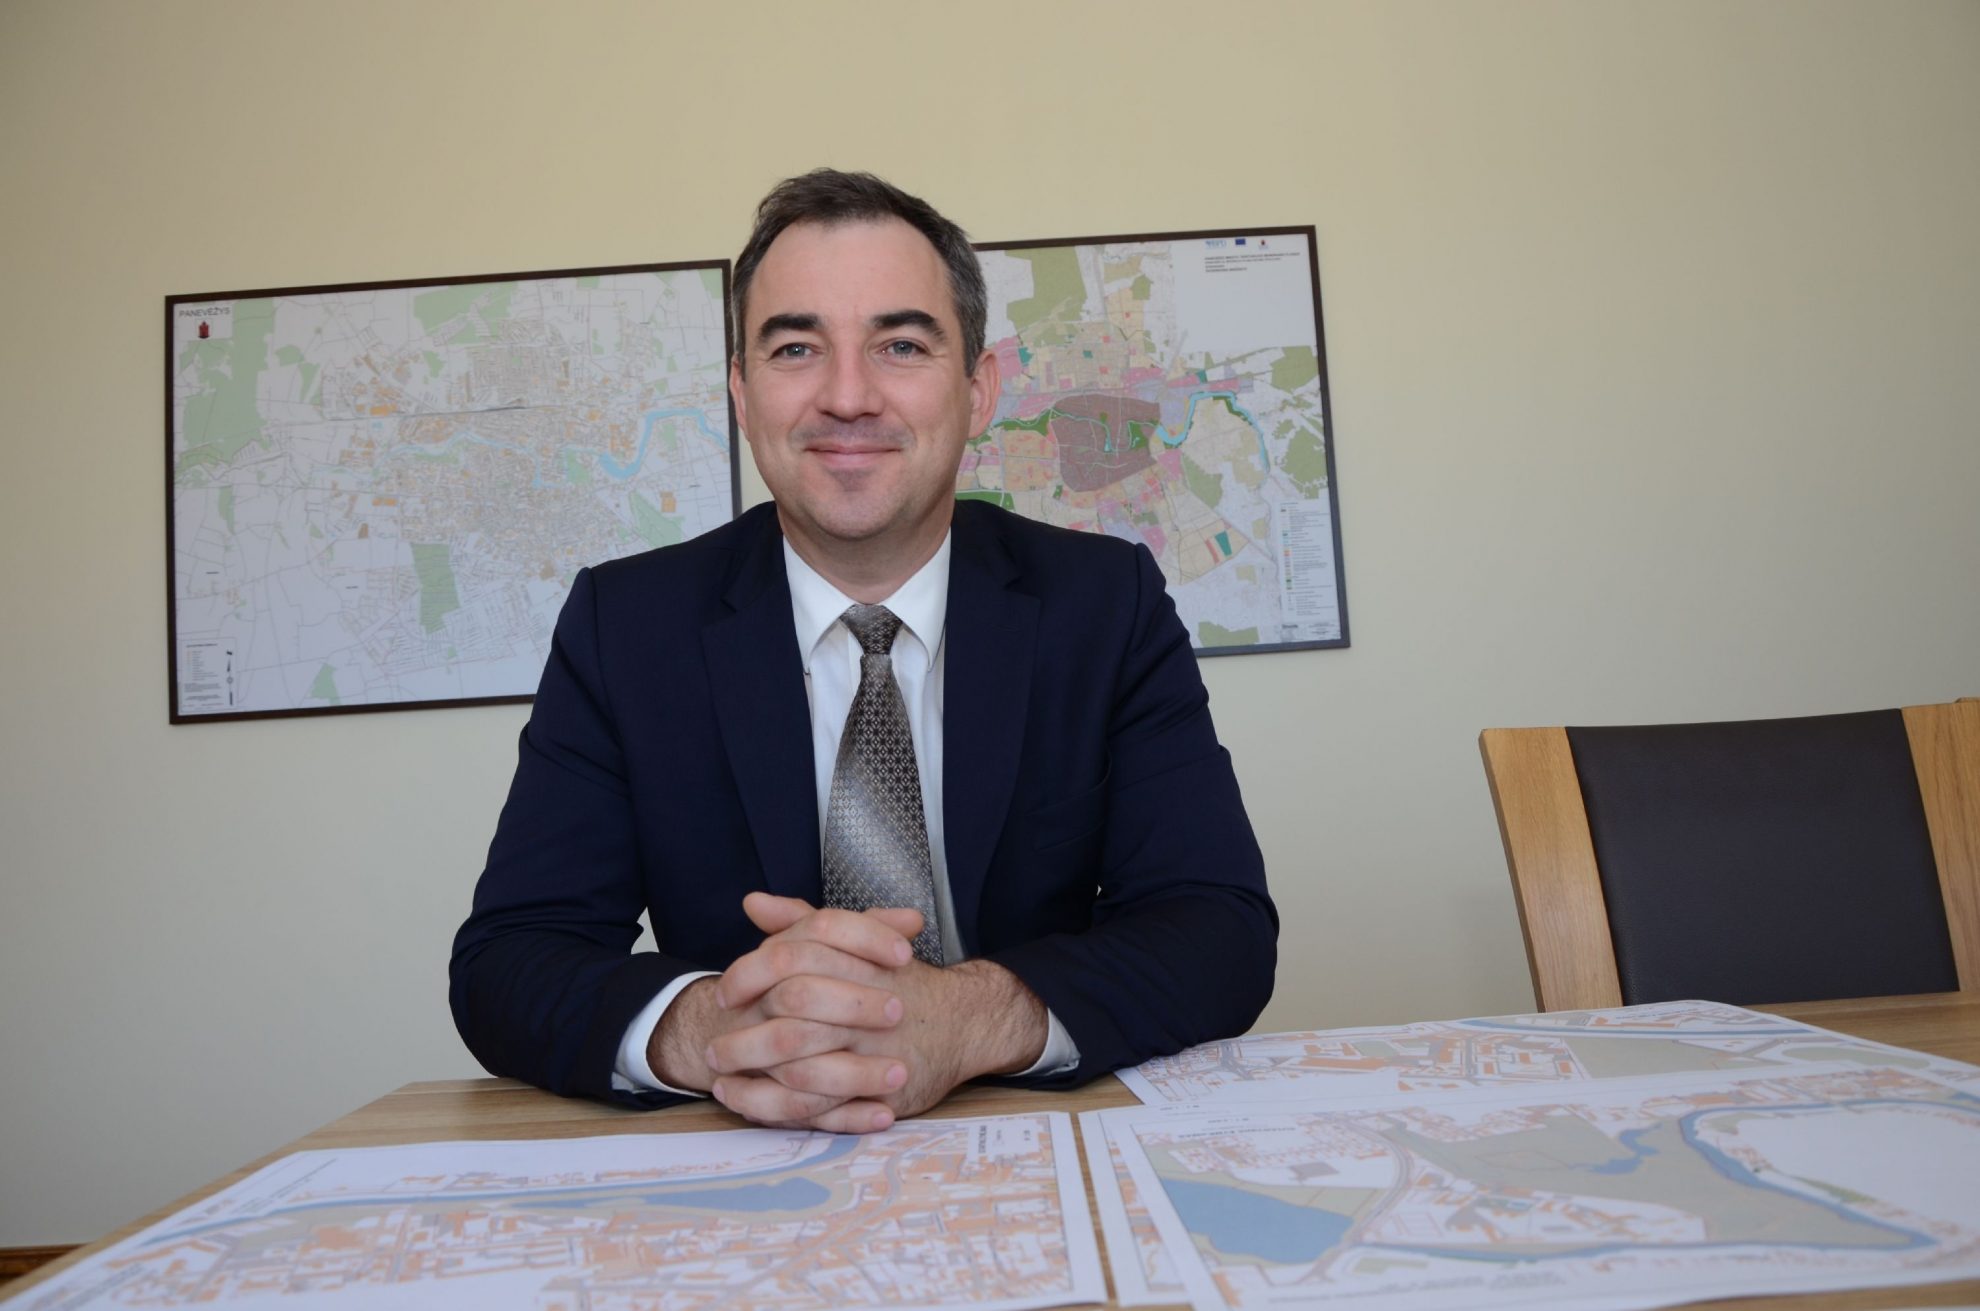 Vos prieš porą metų Panevėžio savivaldybės administracijos direktoriumi paskirtas Tomas Jukna atleistas iš pareigų pačiam prašant.